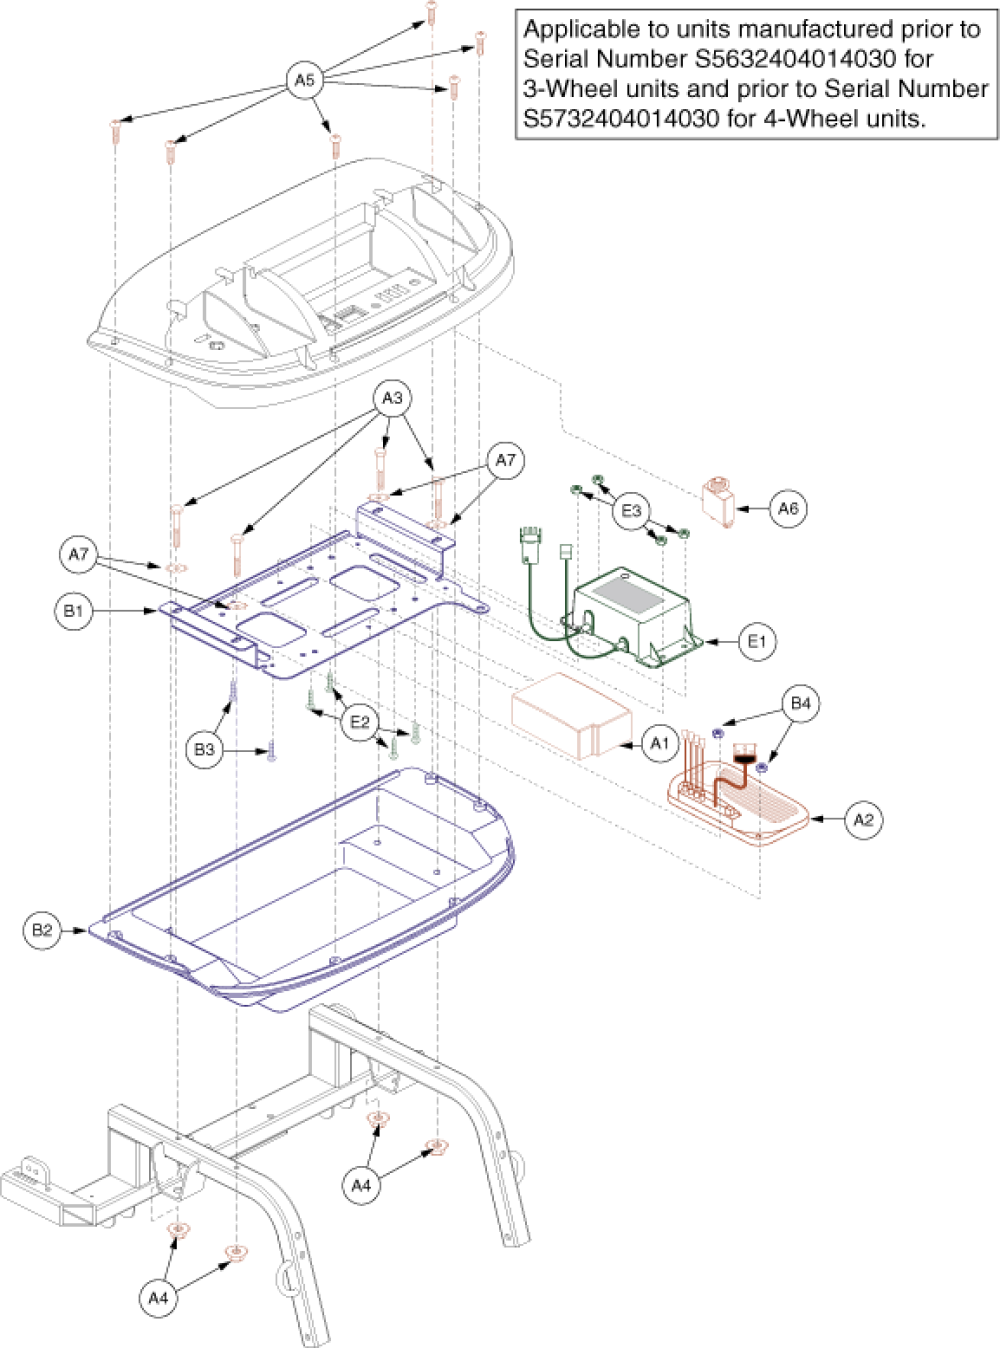 Electronics Assembly - Rear, Version 1 - Part 1 parts diagram